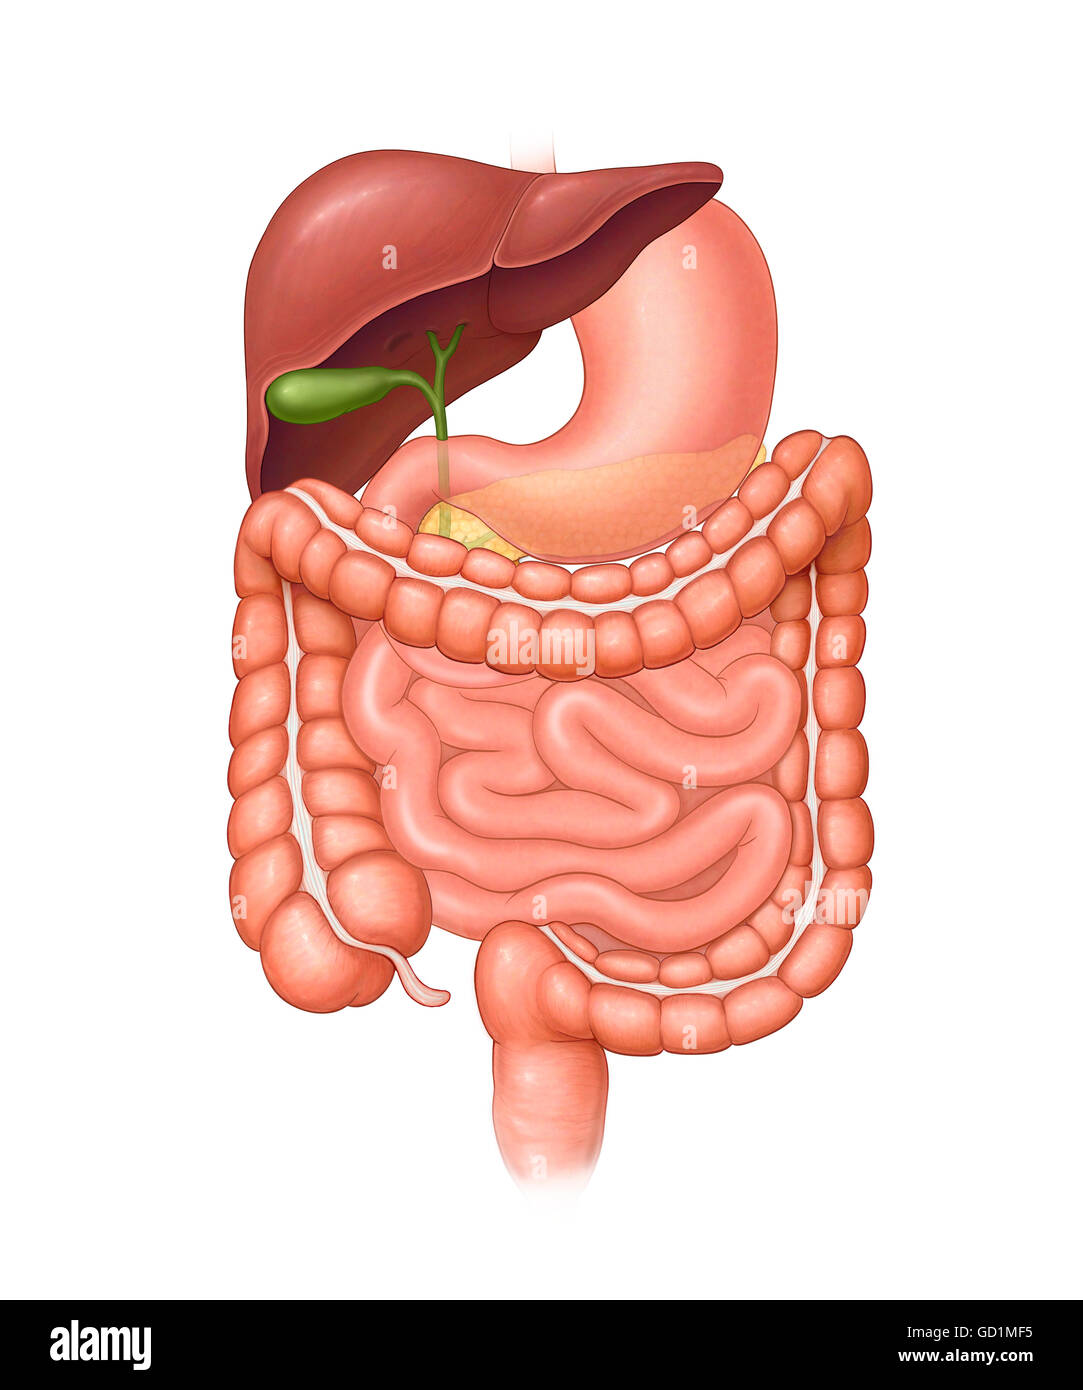 La normale des organes abdominaux à l'extérieur du corps (estomac, foie, vésicule biliaire, gros intestin, intestin grêle, du rectum, cholédoque) Banque D'Images